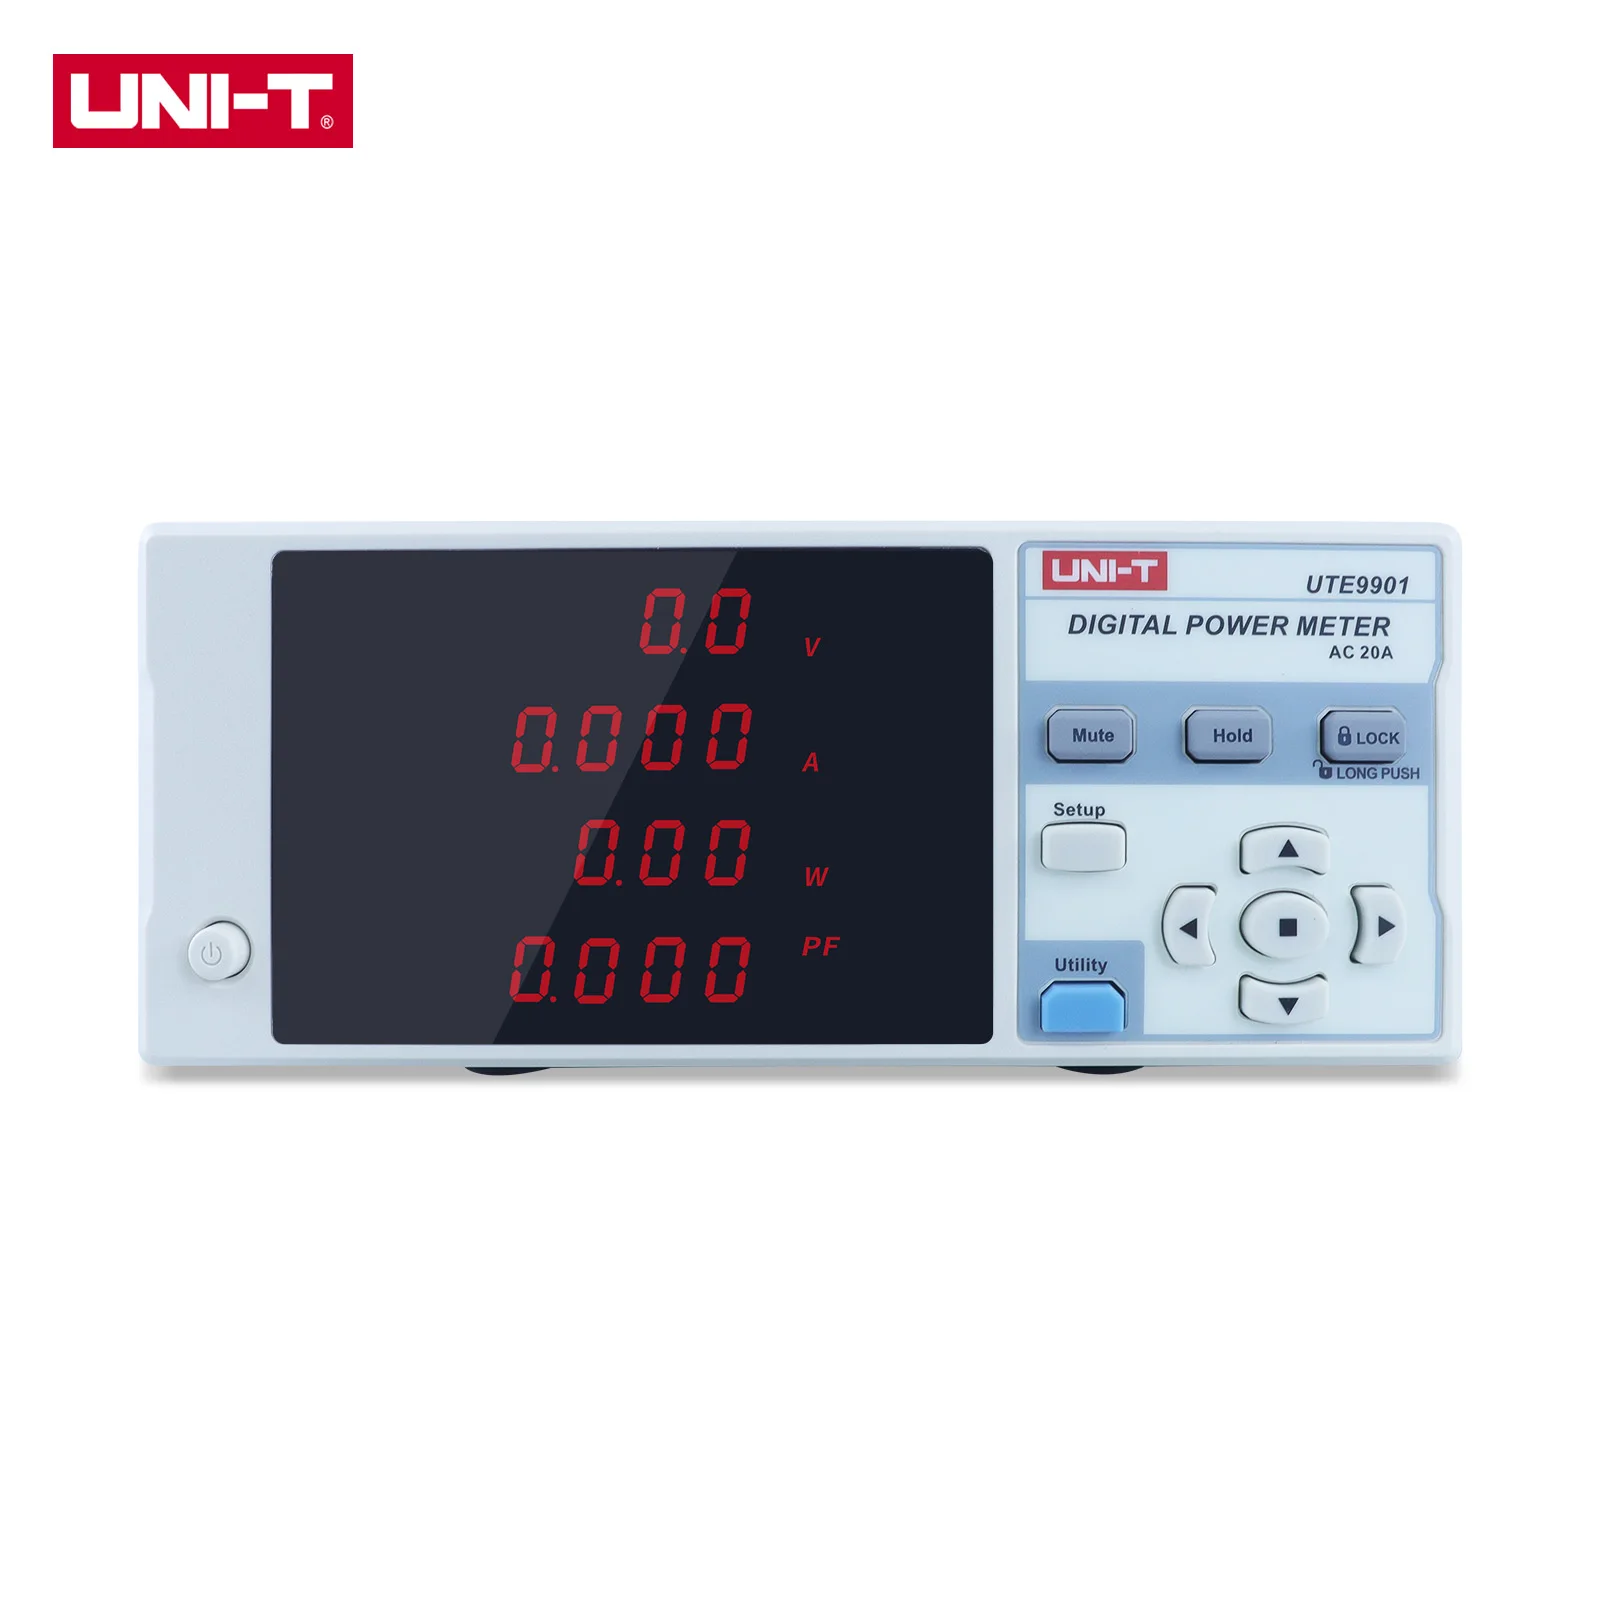 

UNI-T UTE9800 UTE9901 Intelligent Electric Parameter LED Digital Power Meter 3.0V-600.0V Voltage Current Tester